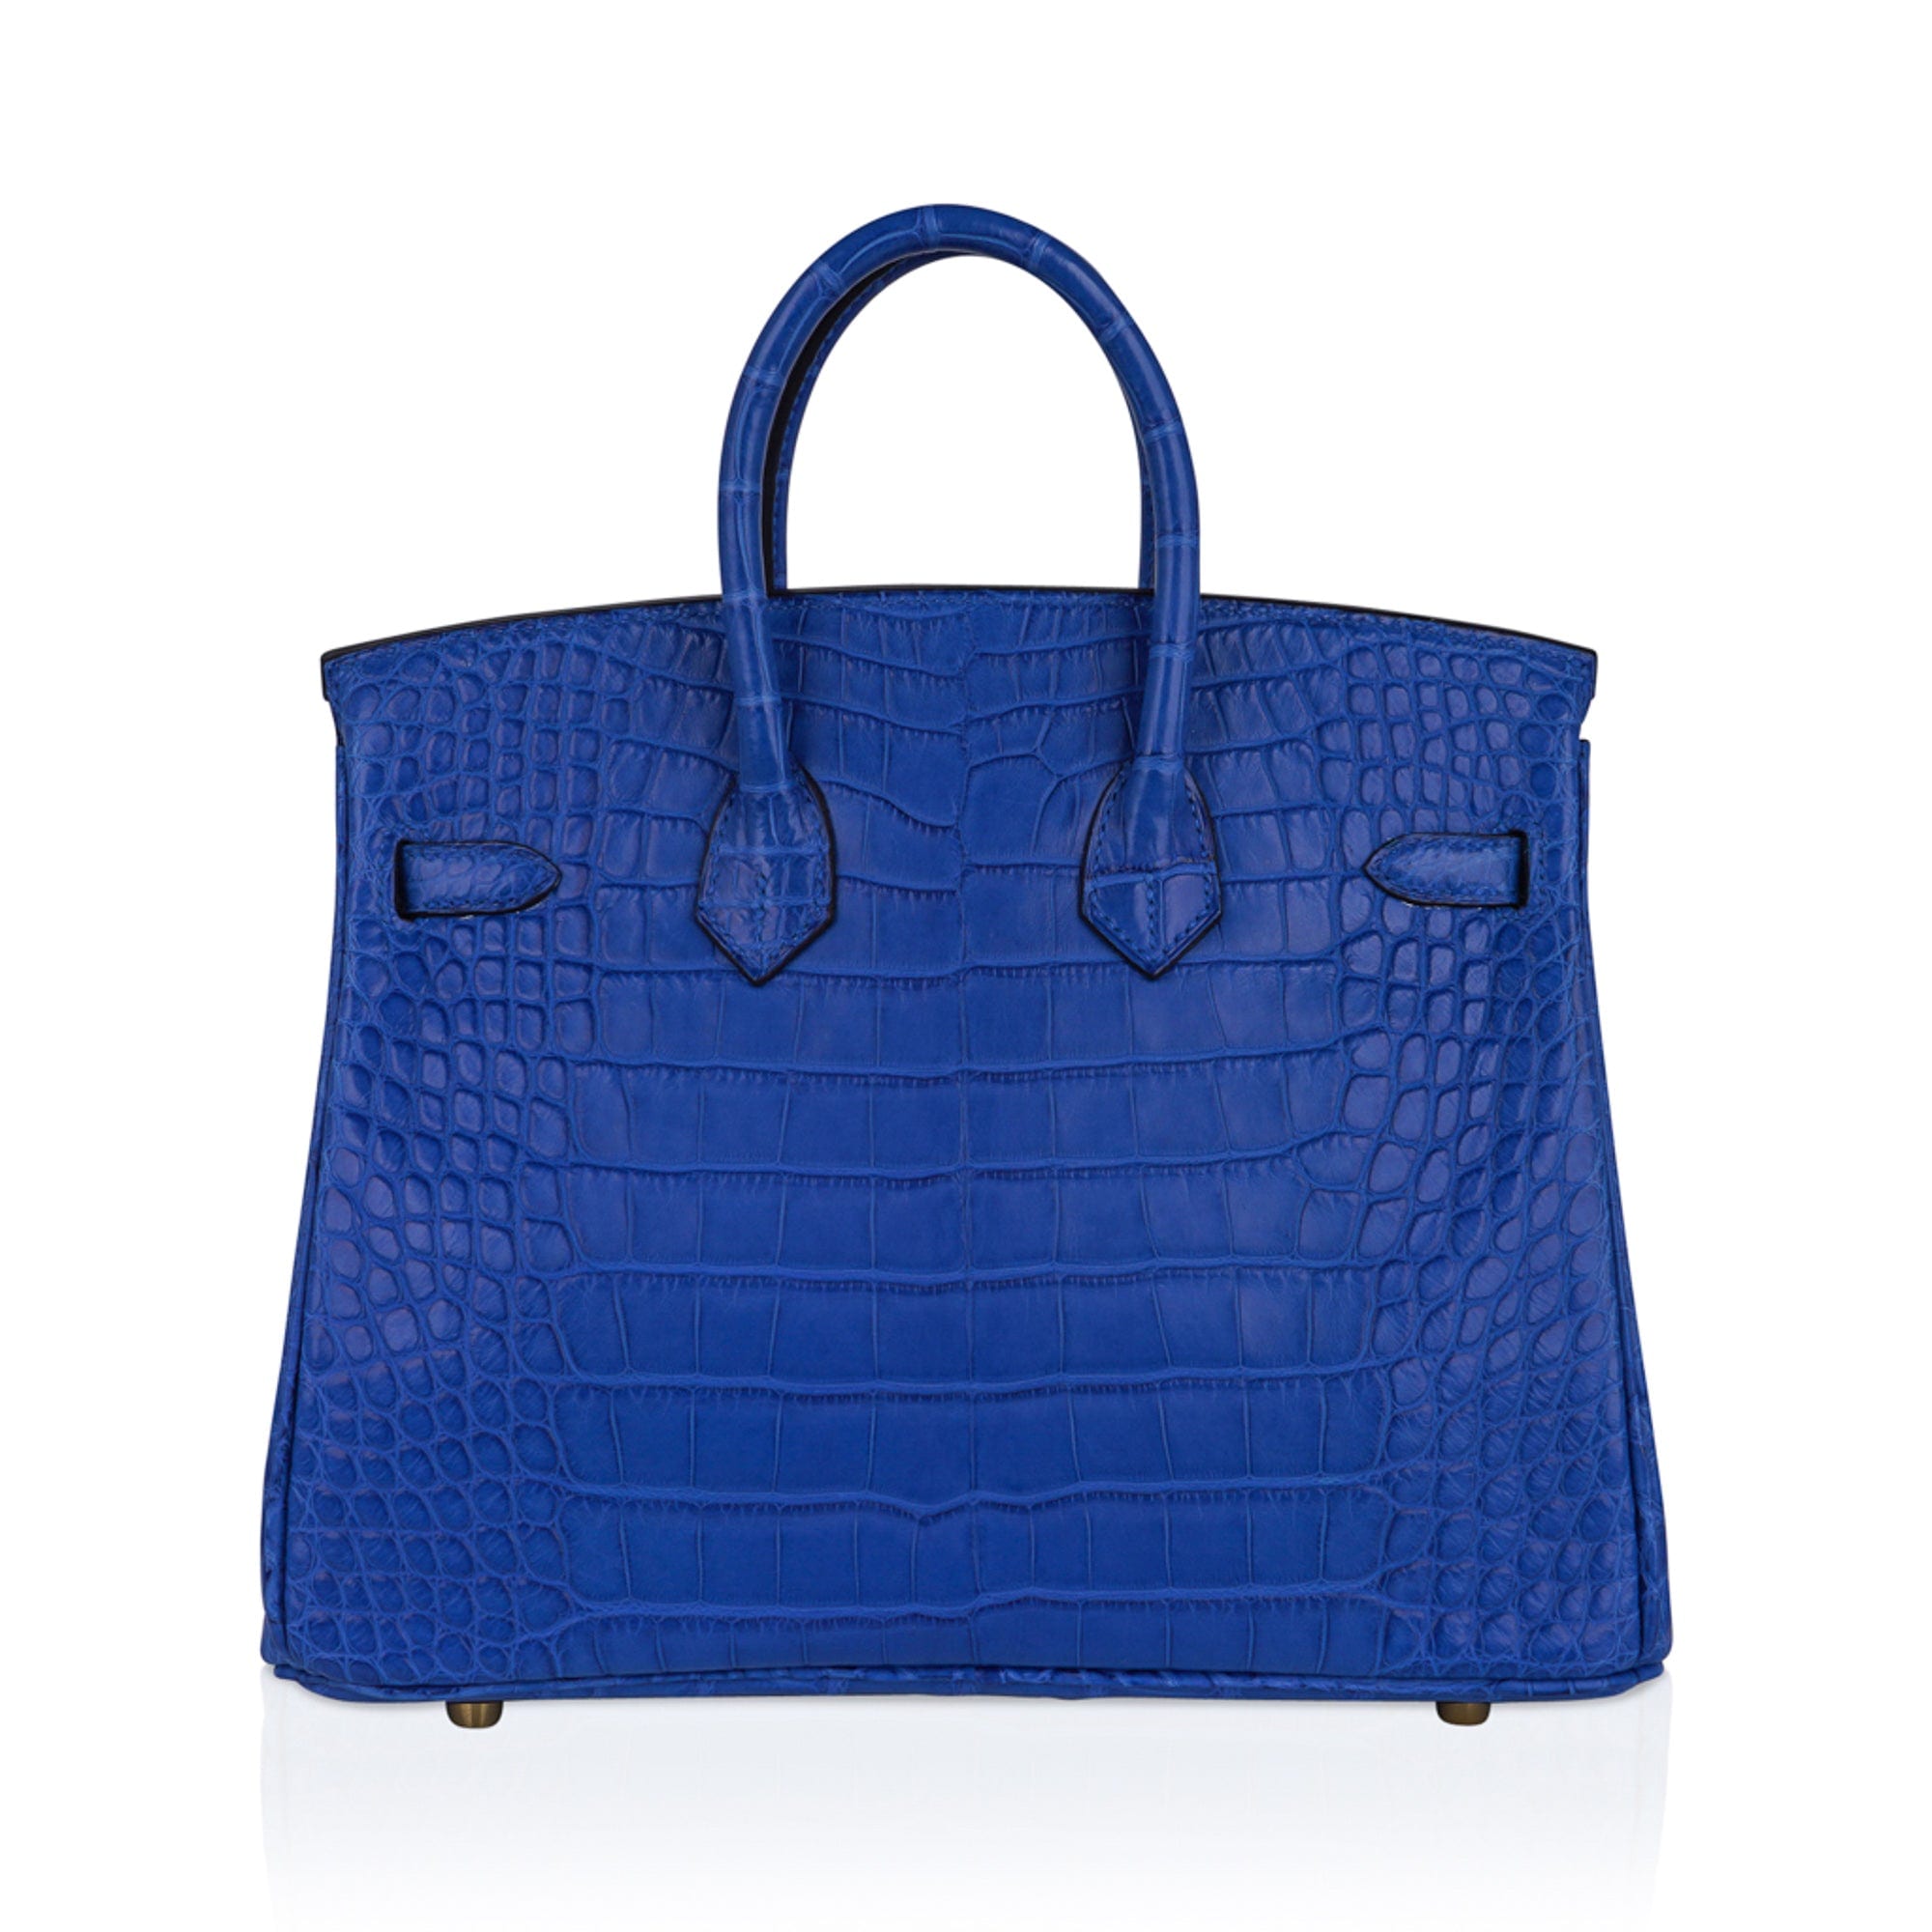 Hermes Birkin Bag Alligator Leather Gold Hardware In Blue